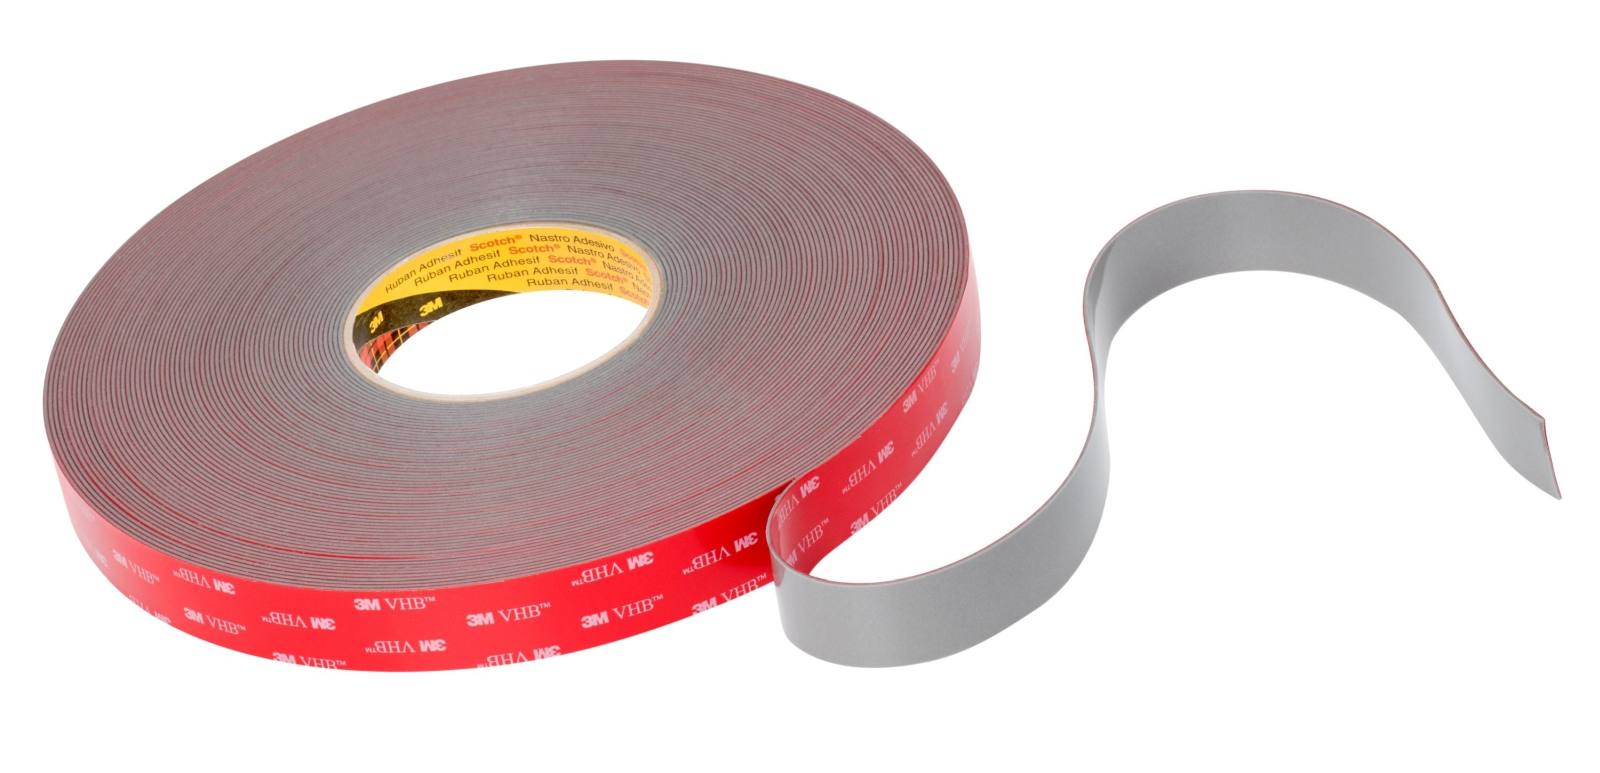 3M VHB Adhesive tape GPH-160GF, grey, 15 mm x 33 m, 1.6 mm